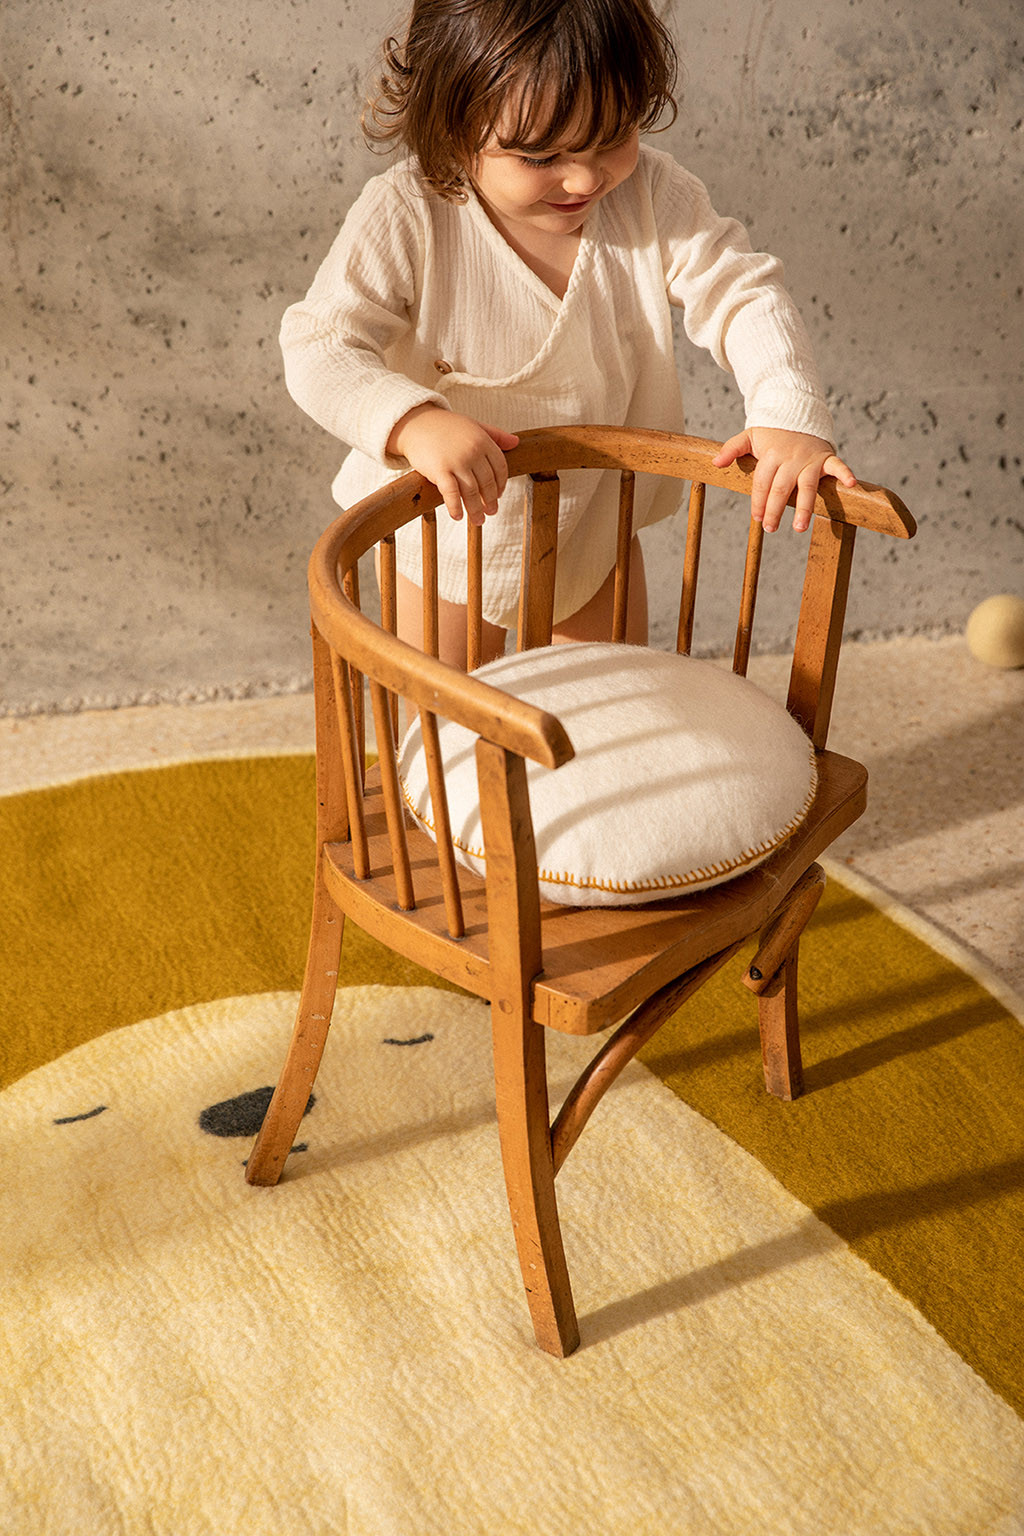 Ambiance joyeuse dans une chambre d'enfant avec un coussin en feutre blanc et un tapis en laine bouillie